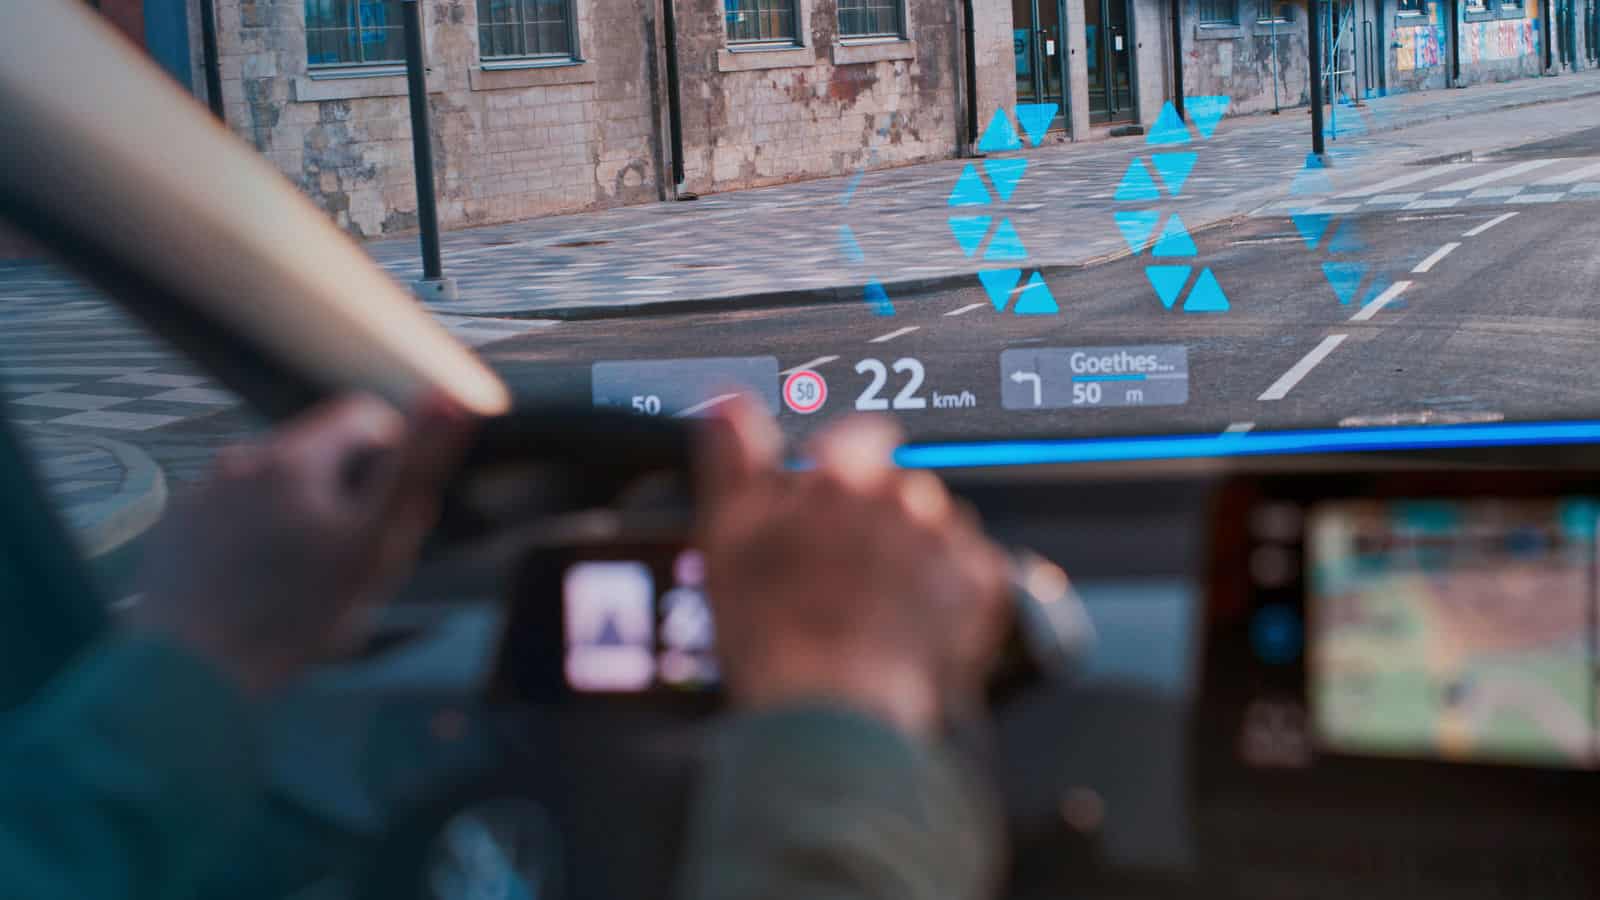 digitales display auf der windschutzscheibe eines autos